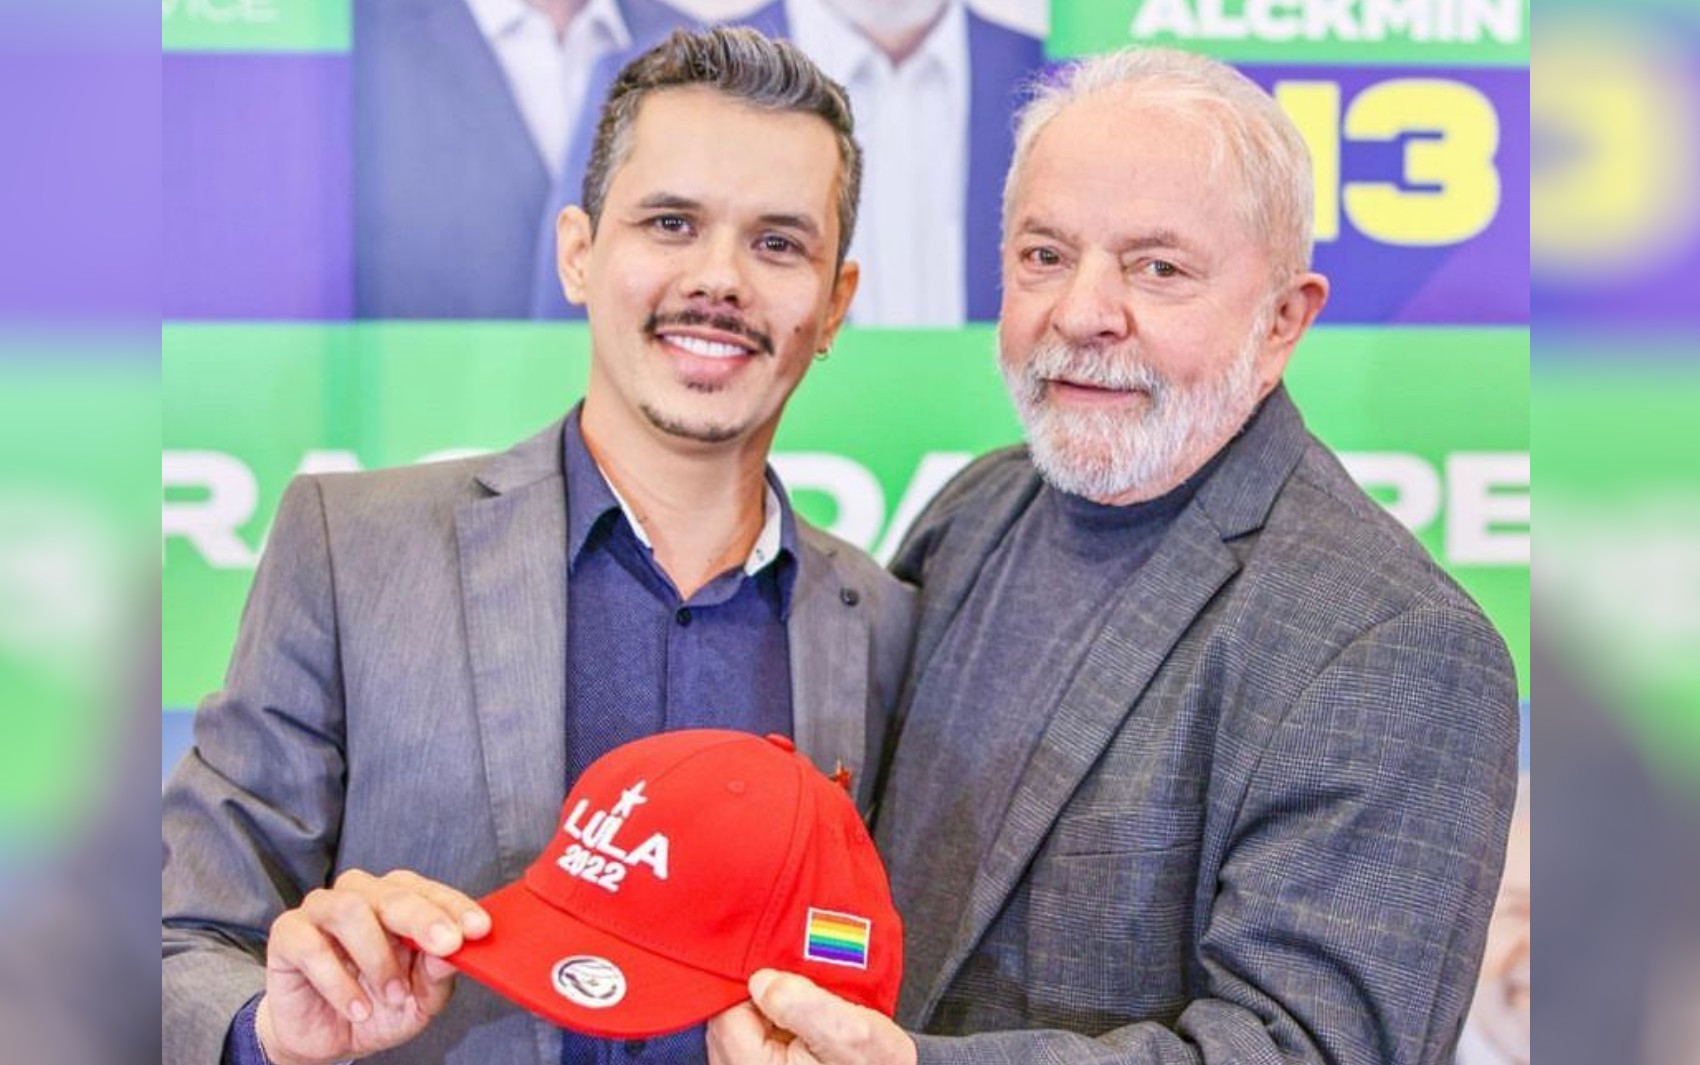 Policial rodoviário federal, Fabrício Rosa é nomeado para integrar equipe de transição do governo Lula